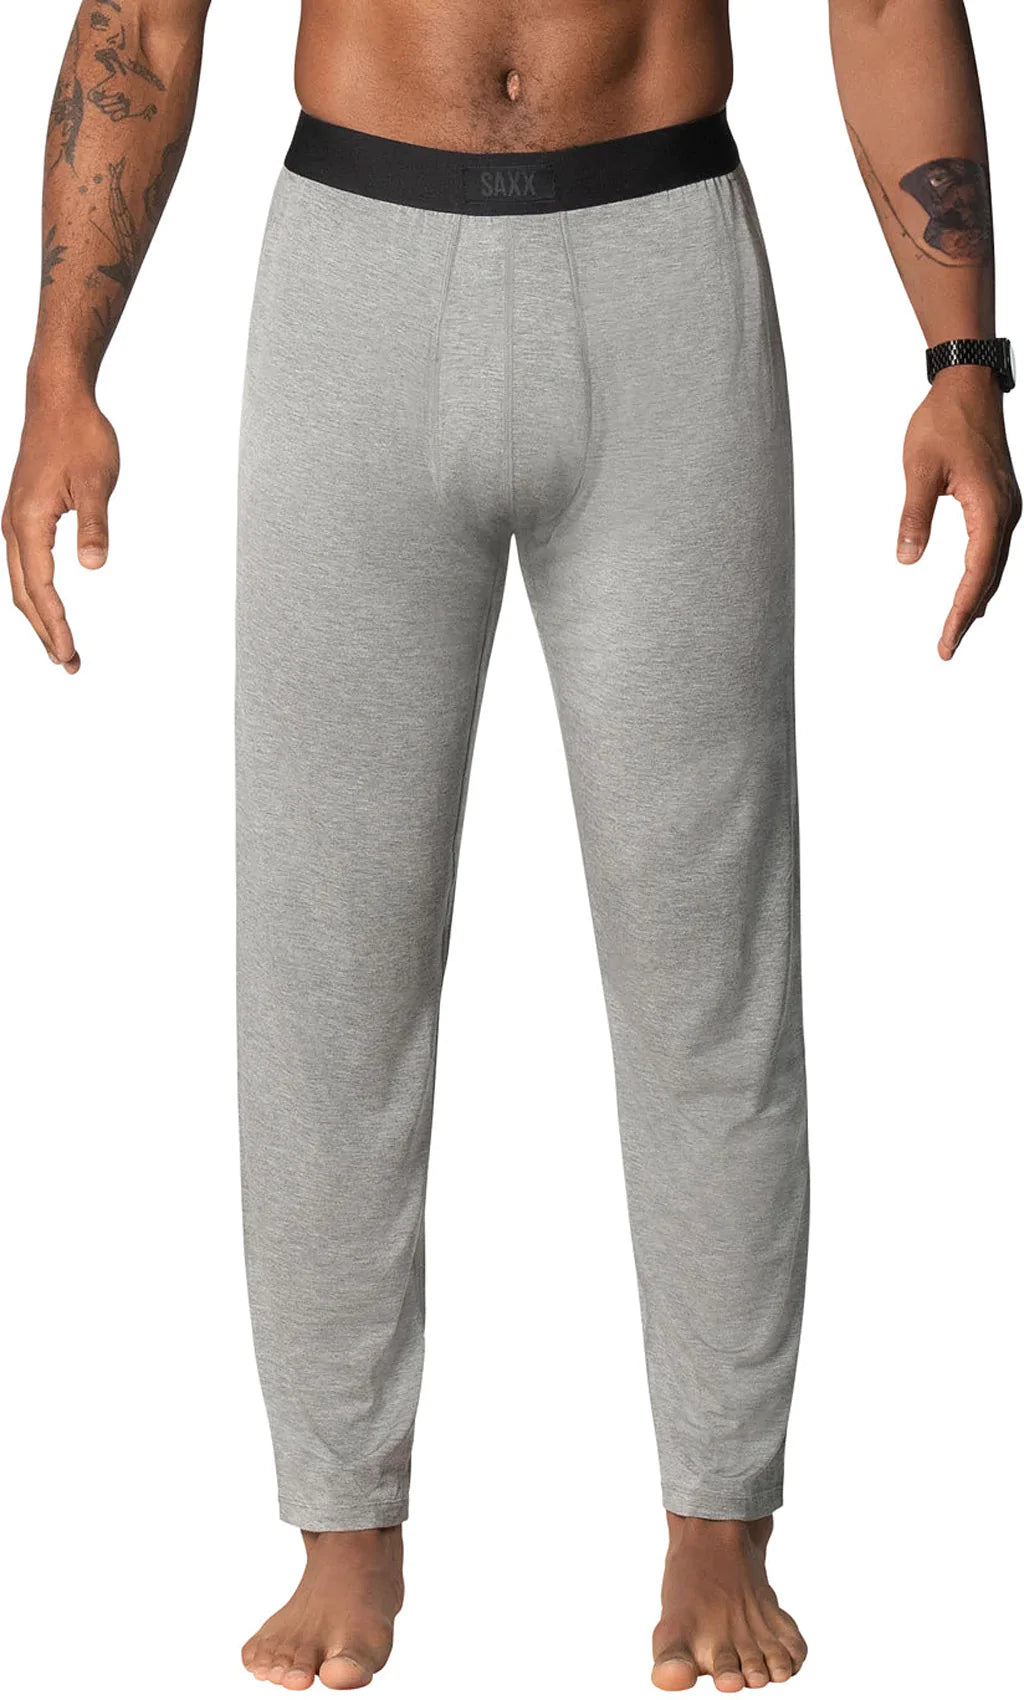 Saxx Sleepwalker Pants with Ballpark Pouch – Sheer Essentials